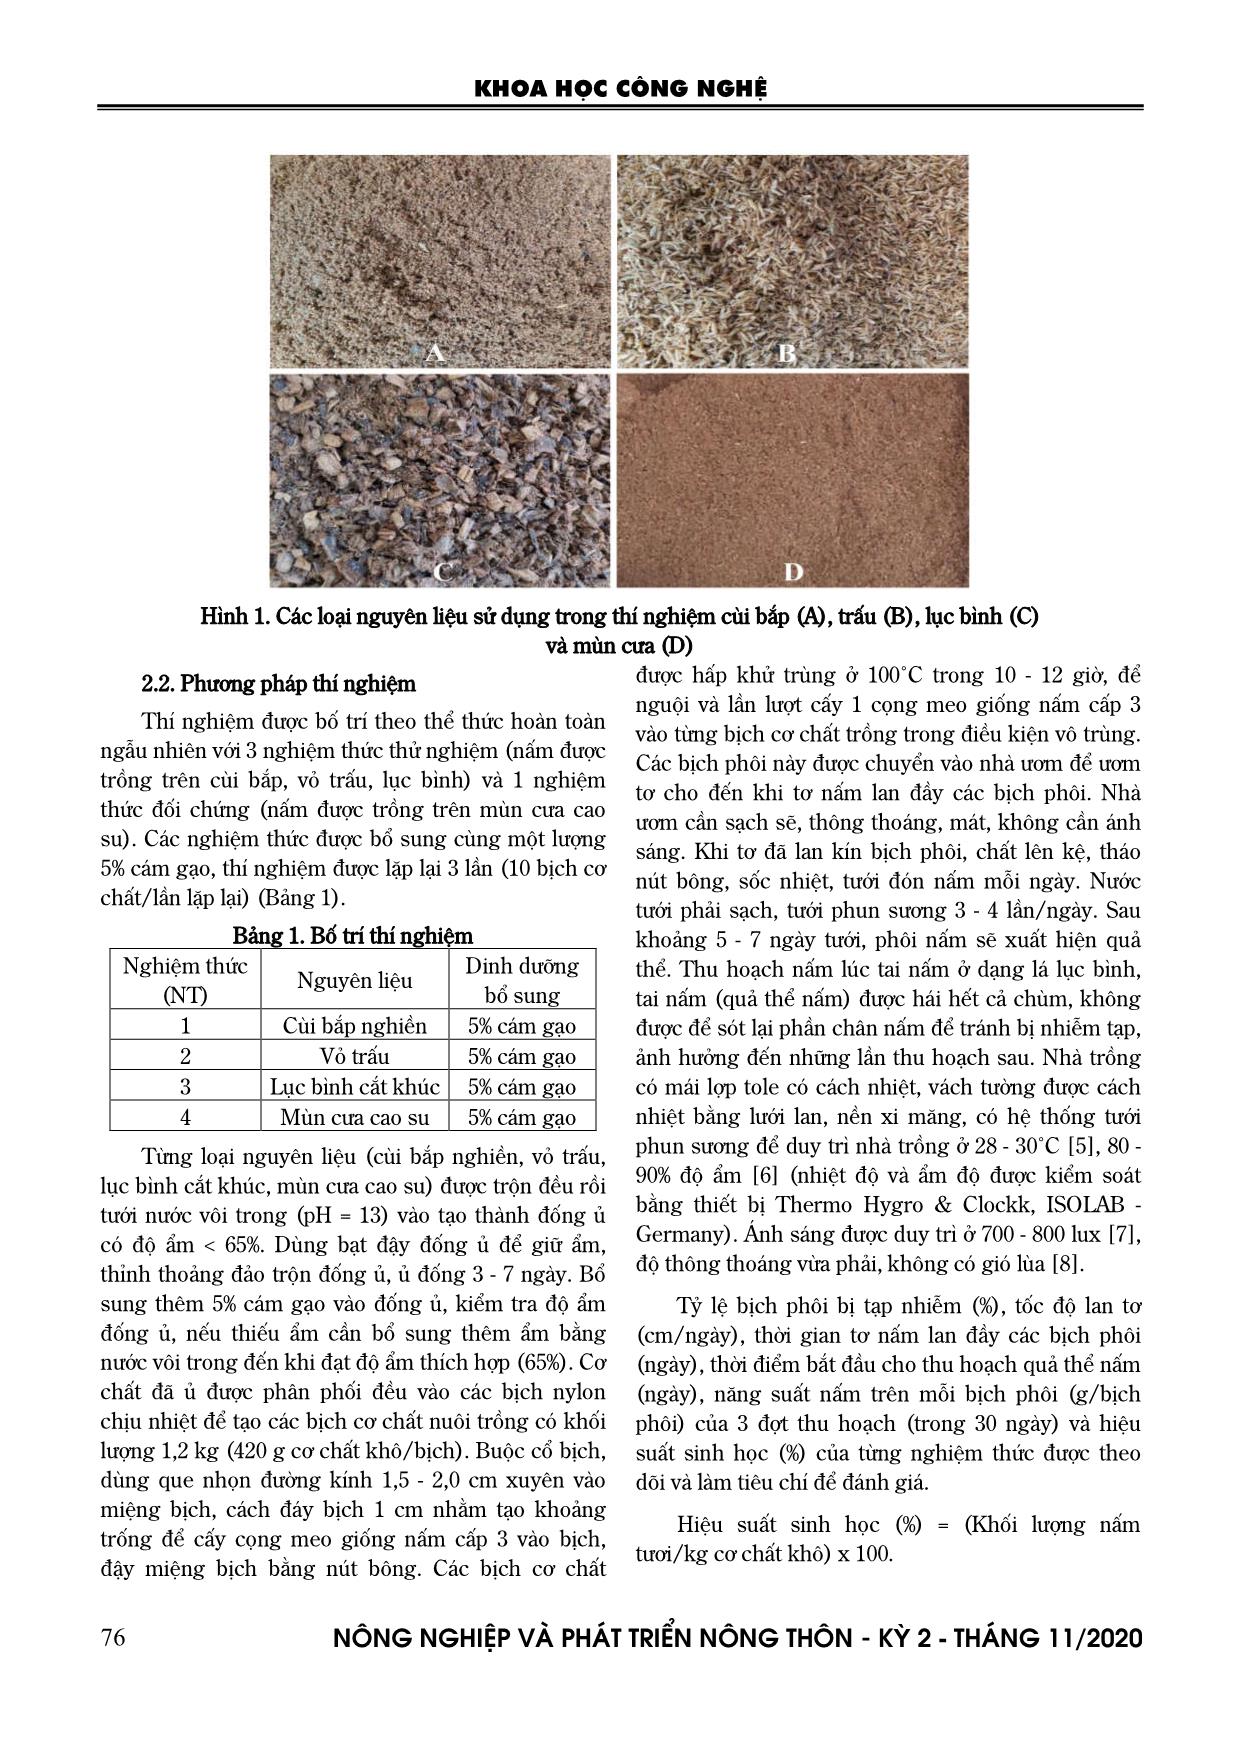 Nghiên cứu thử nghiệm trồng nấm bào ngư xám (Pleurotus sajor-caju (Fr.) Sing.) trên phụ phế phẩm cùi bắp, vỏ trấu và lục bình trang 2